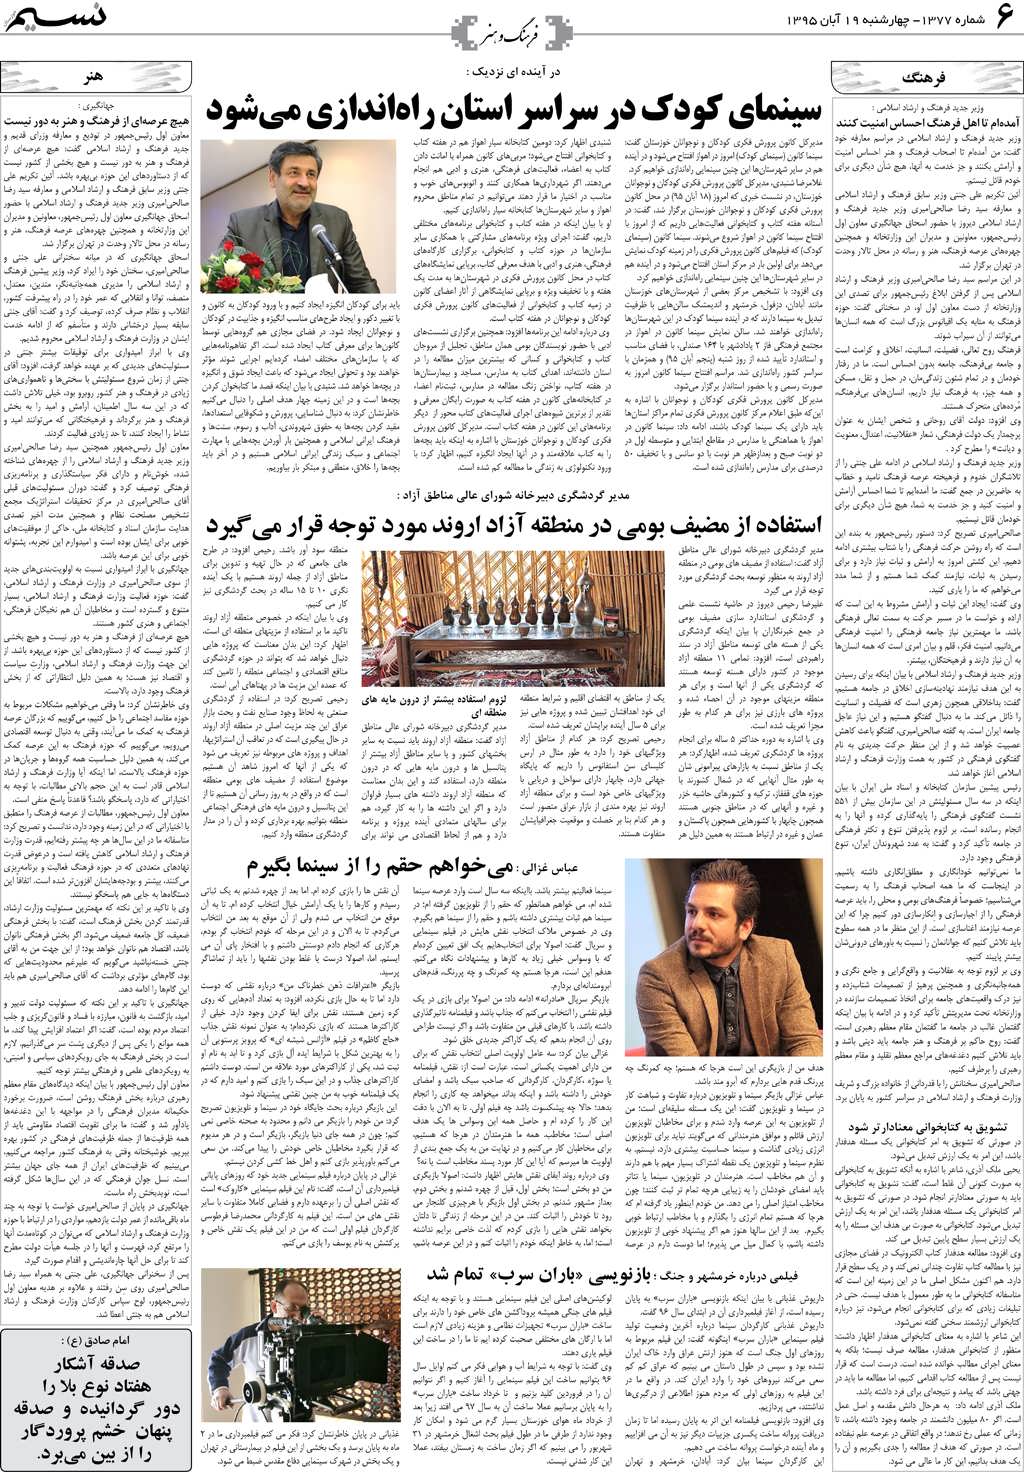 صفحه فرهنگ و هنر روزنامه نسیم شماره 1377